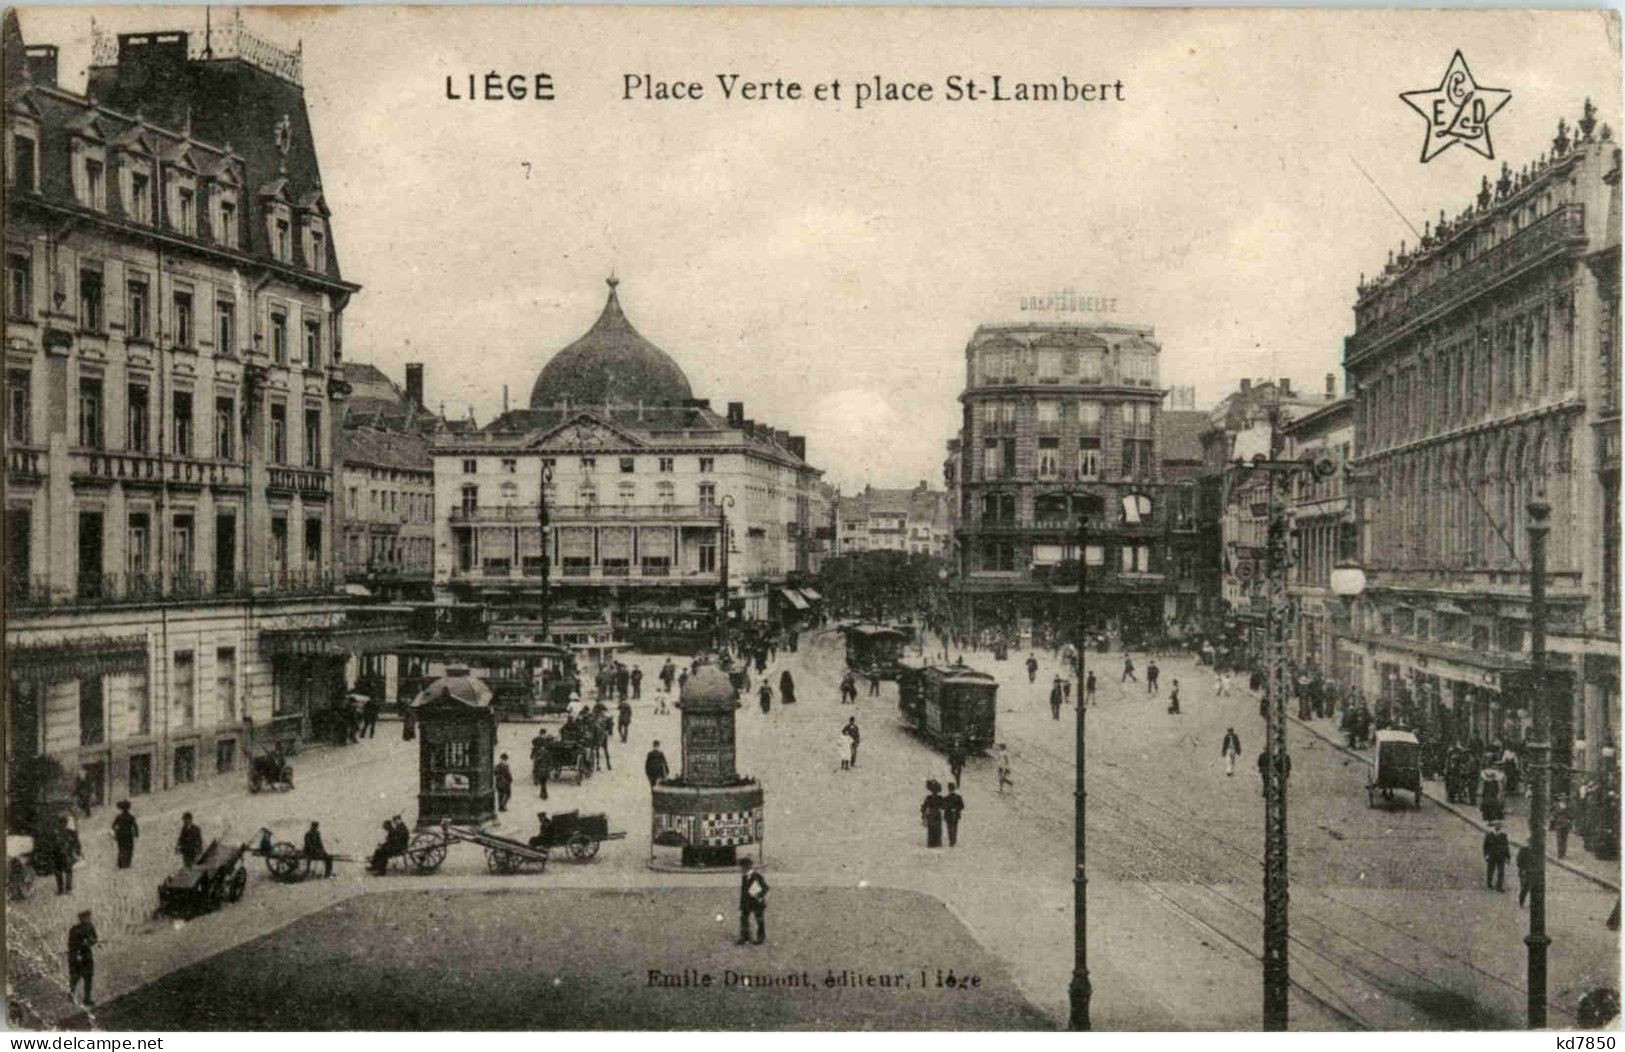 Liege - Place Verte - Liege